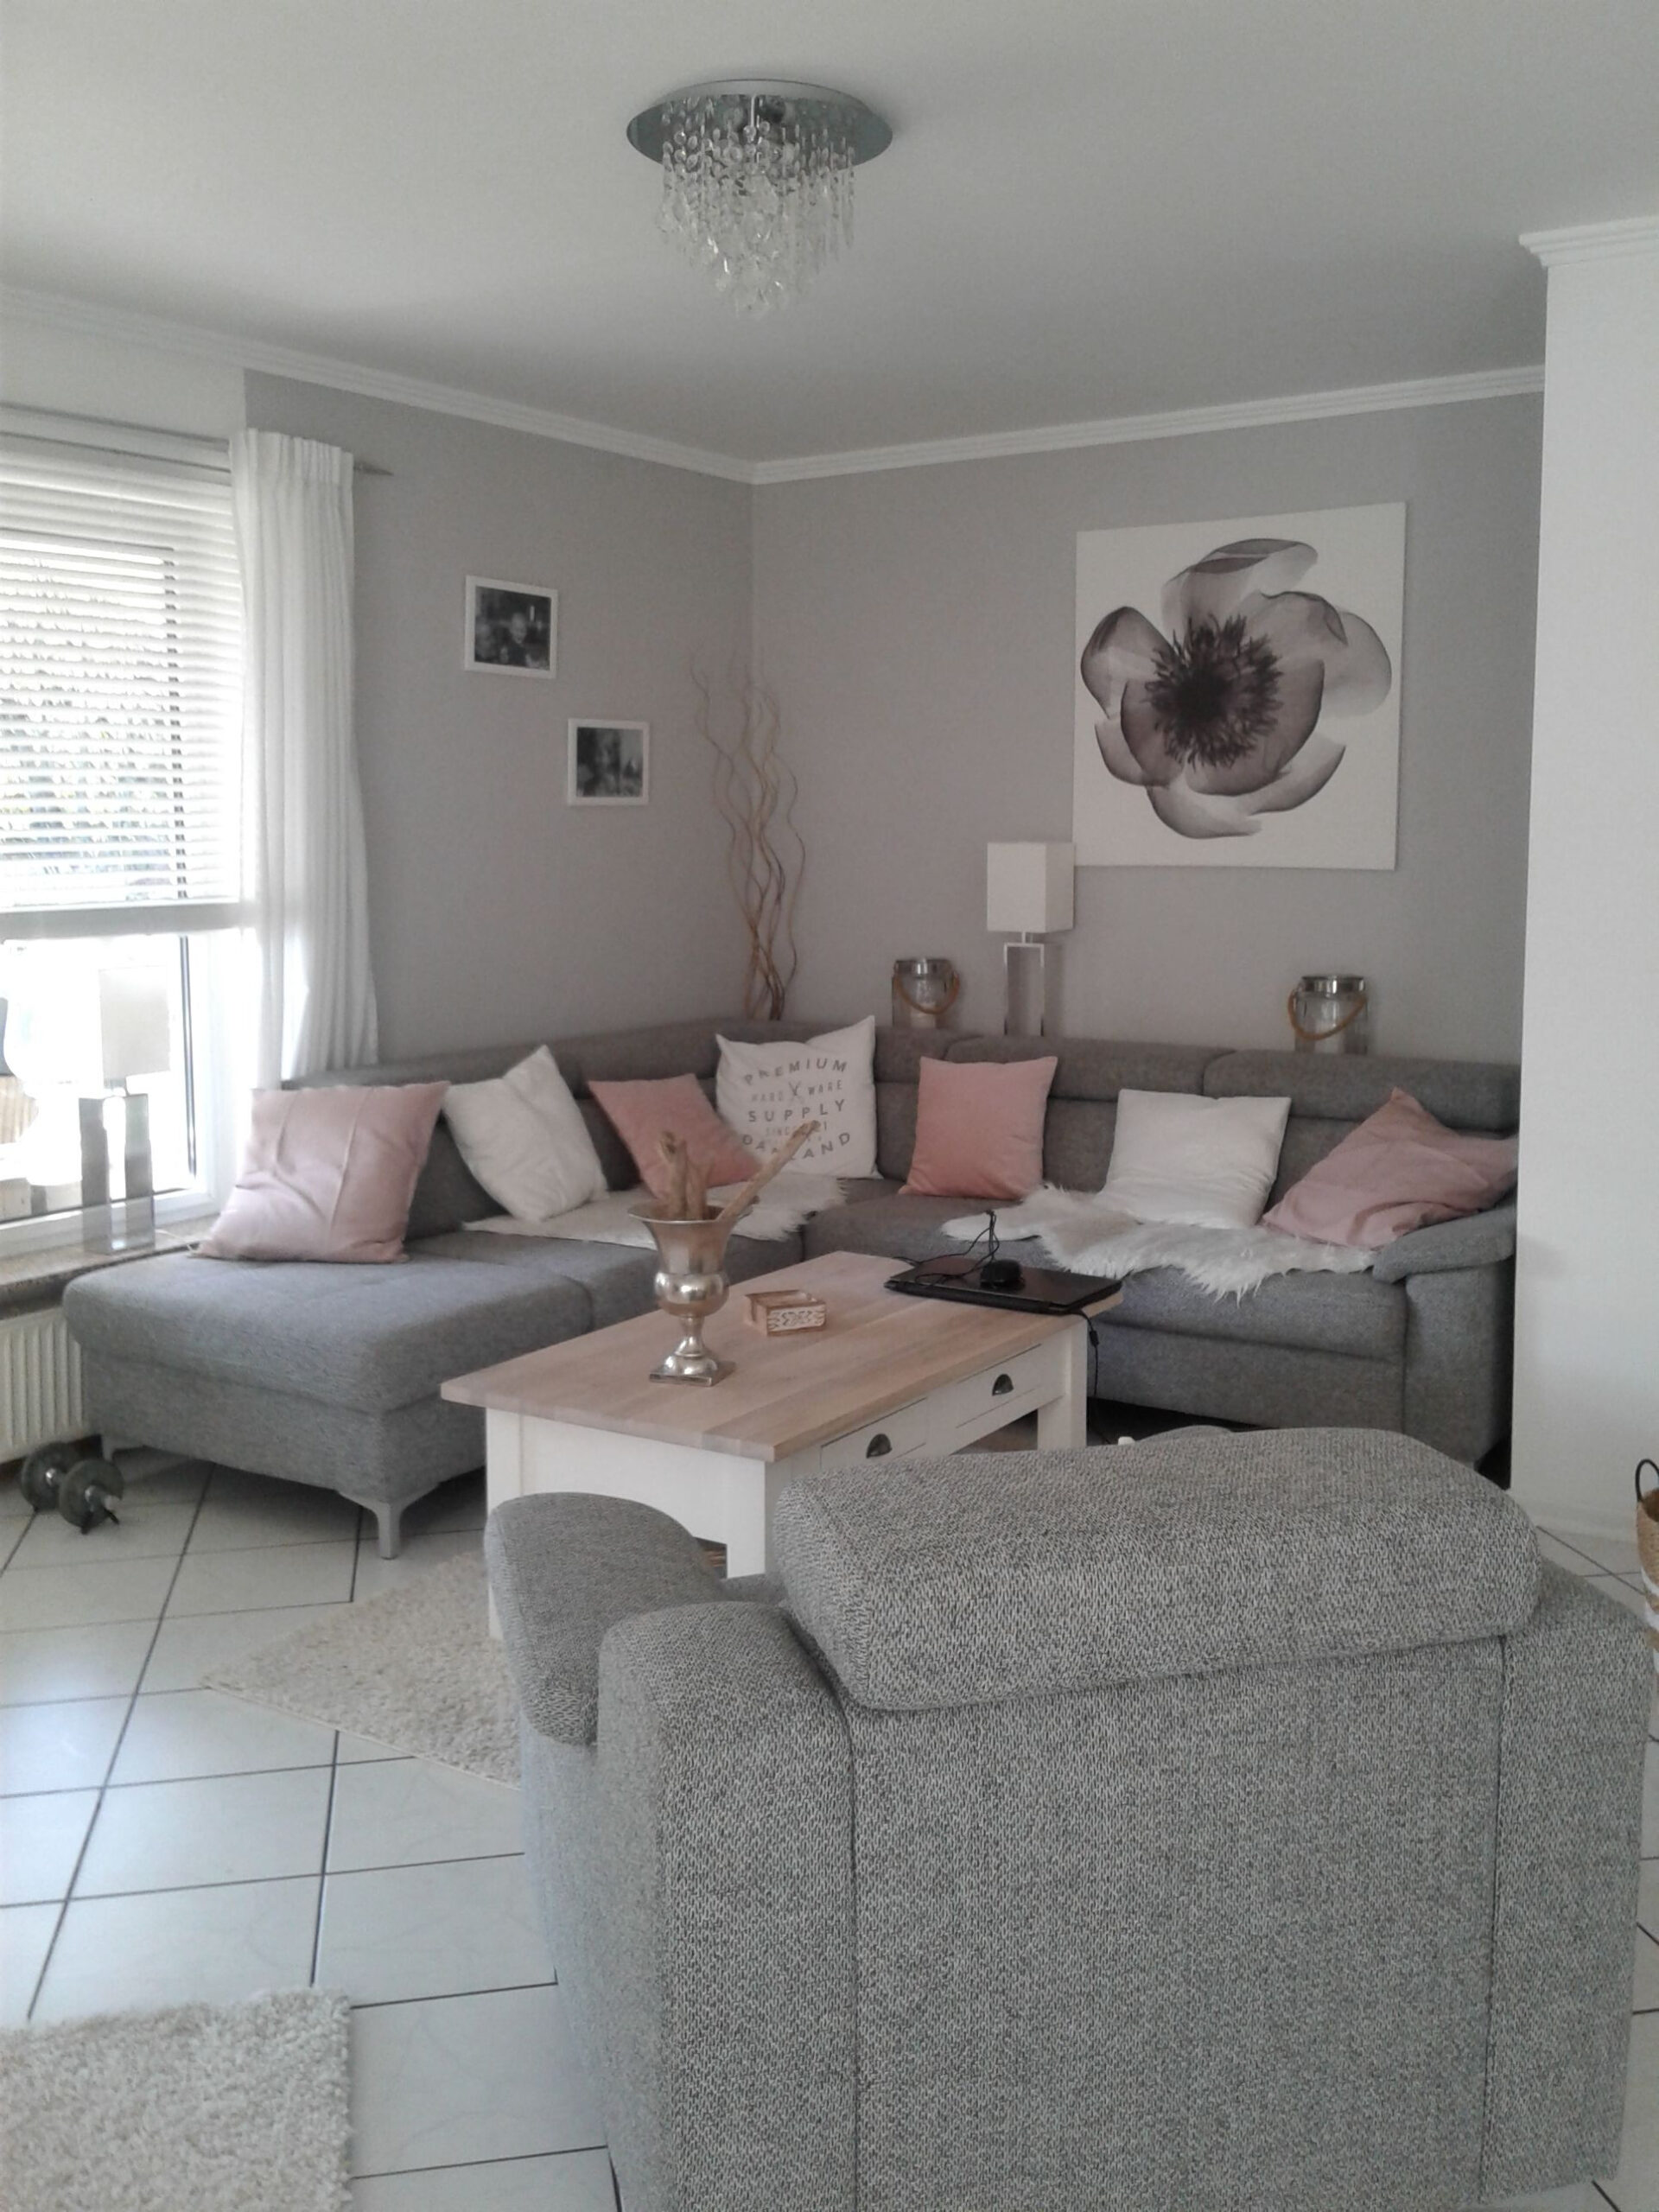 Wohnzimmer In Grau- Weiß Und Farbtupfer In Matt Rosa | Living Room intended for Grau Rosa Wohnzimmer